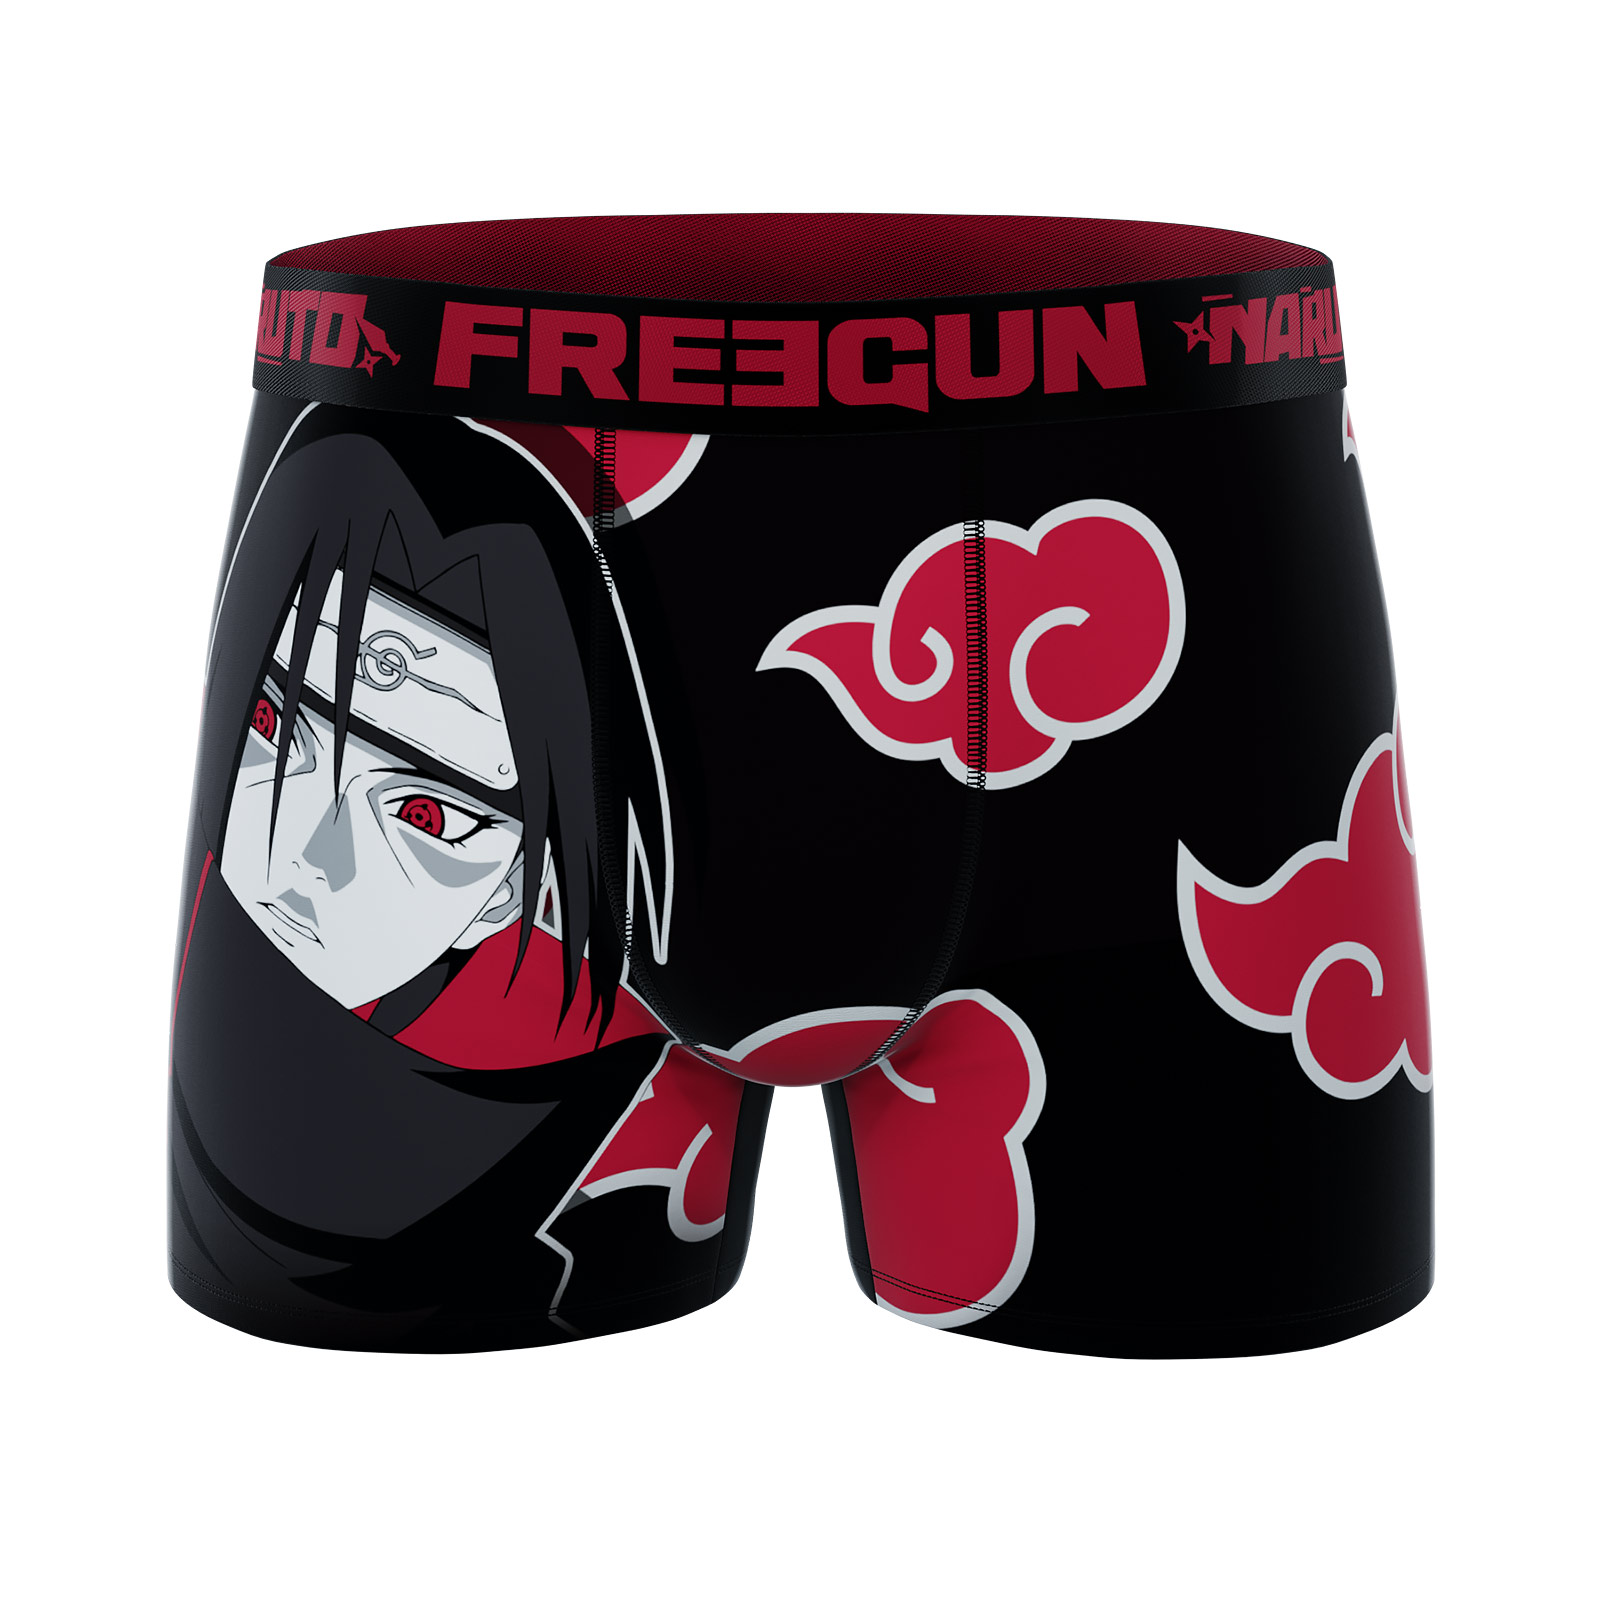 Naruto - Itachi Akatsuki Freegun Boxershorts